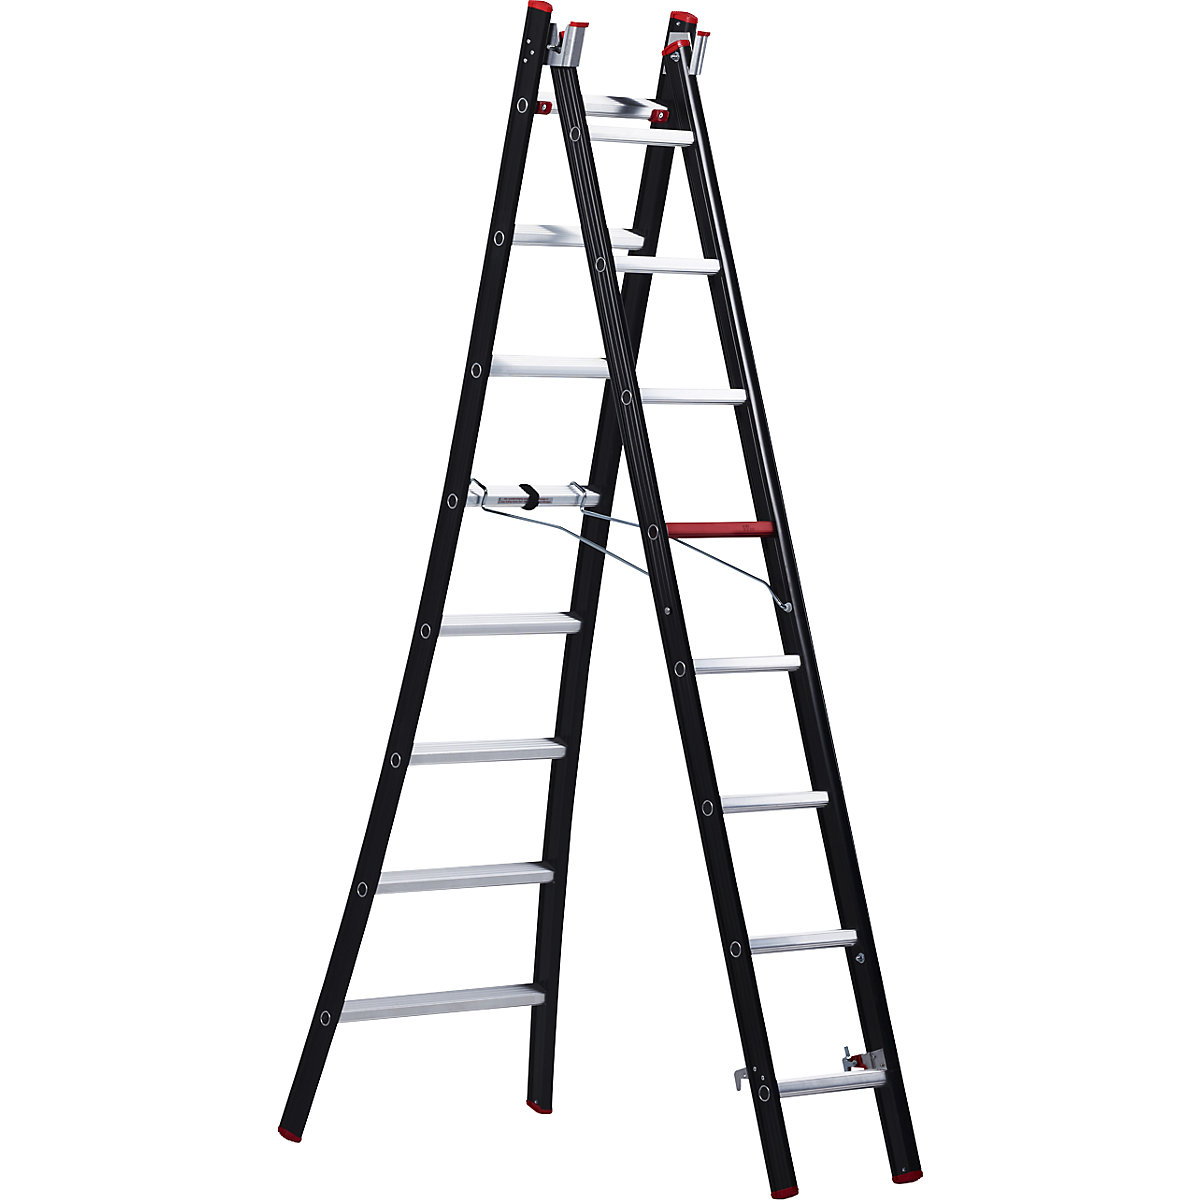 NEVADA multi purpose ladder – Altrex